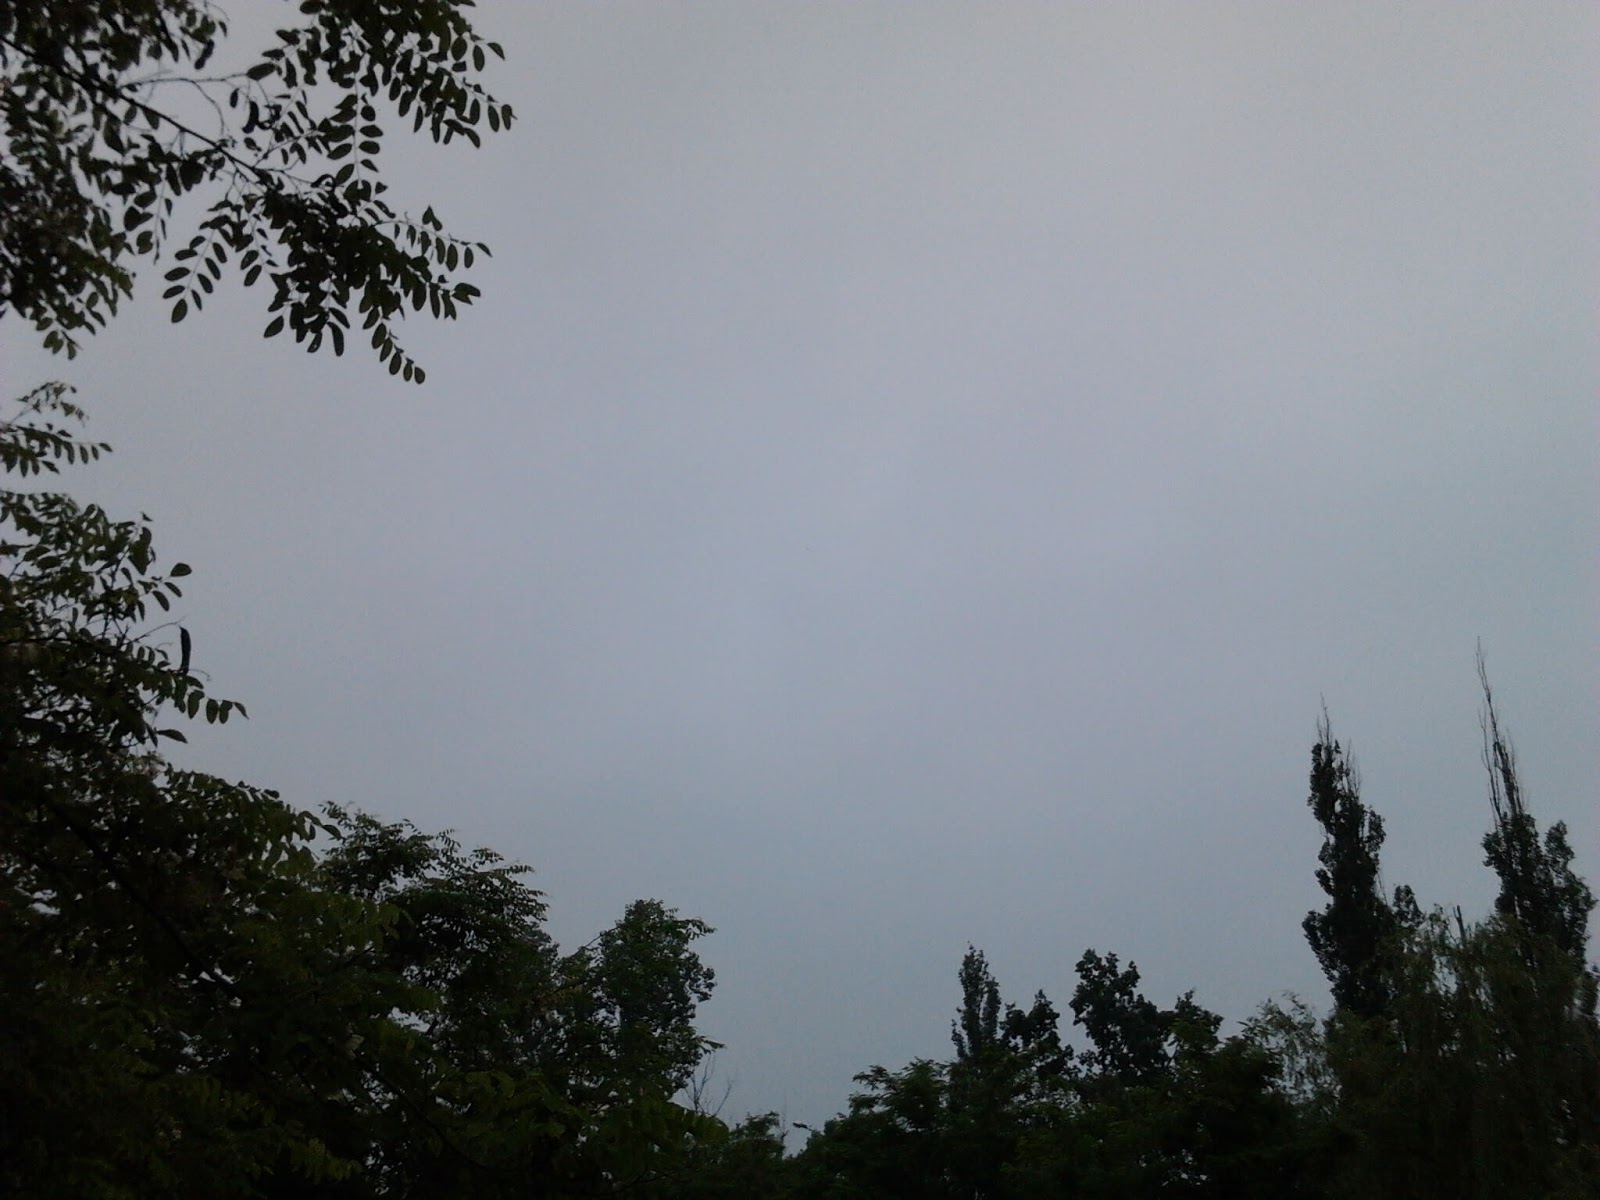 Прогулка по аллее после зарядки, затянутое небо ( фото сзади ).
Феномен, резонанс ( иду без зонта, пустился на минуту ( с лишним )  сильный дождь ).
Погода в Херсоне: пасмурно, ветренно, штиль / image18 / 2020.05.28 / 08:46